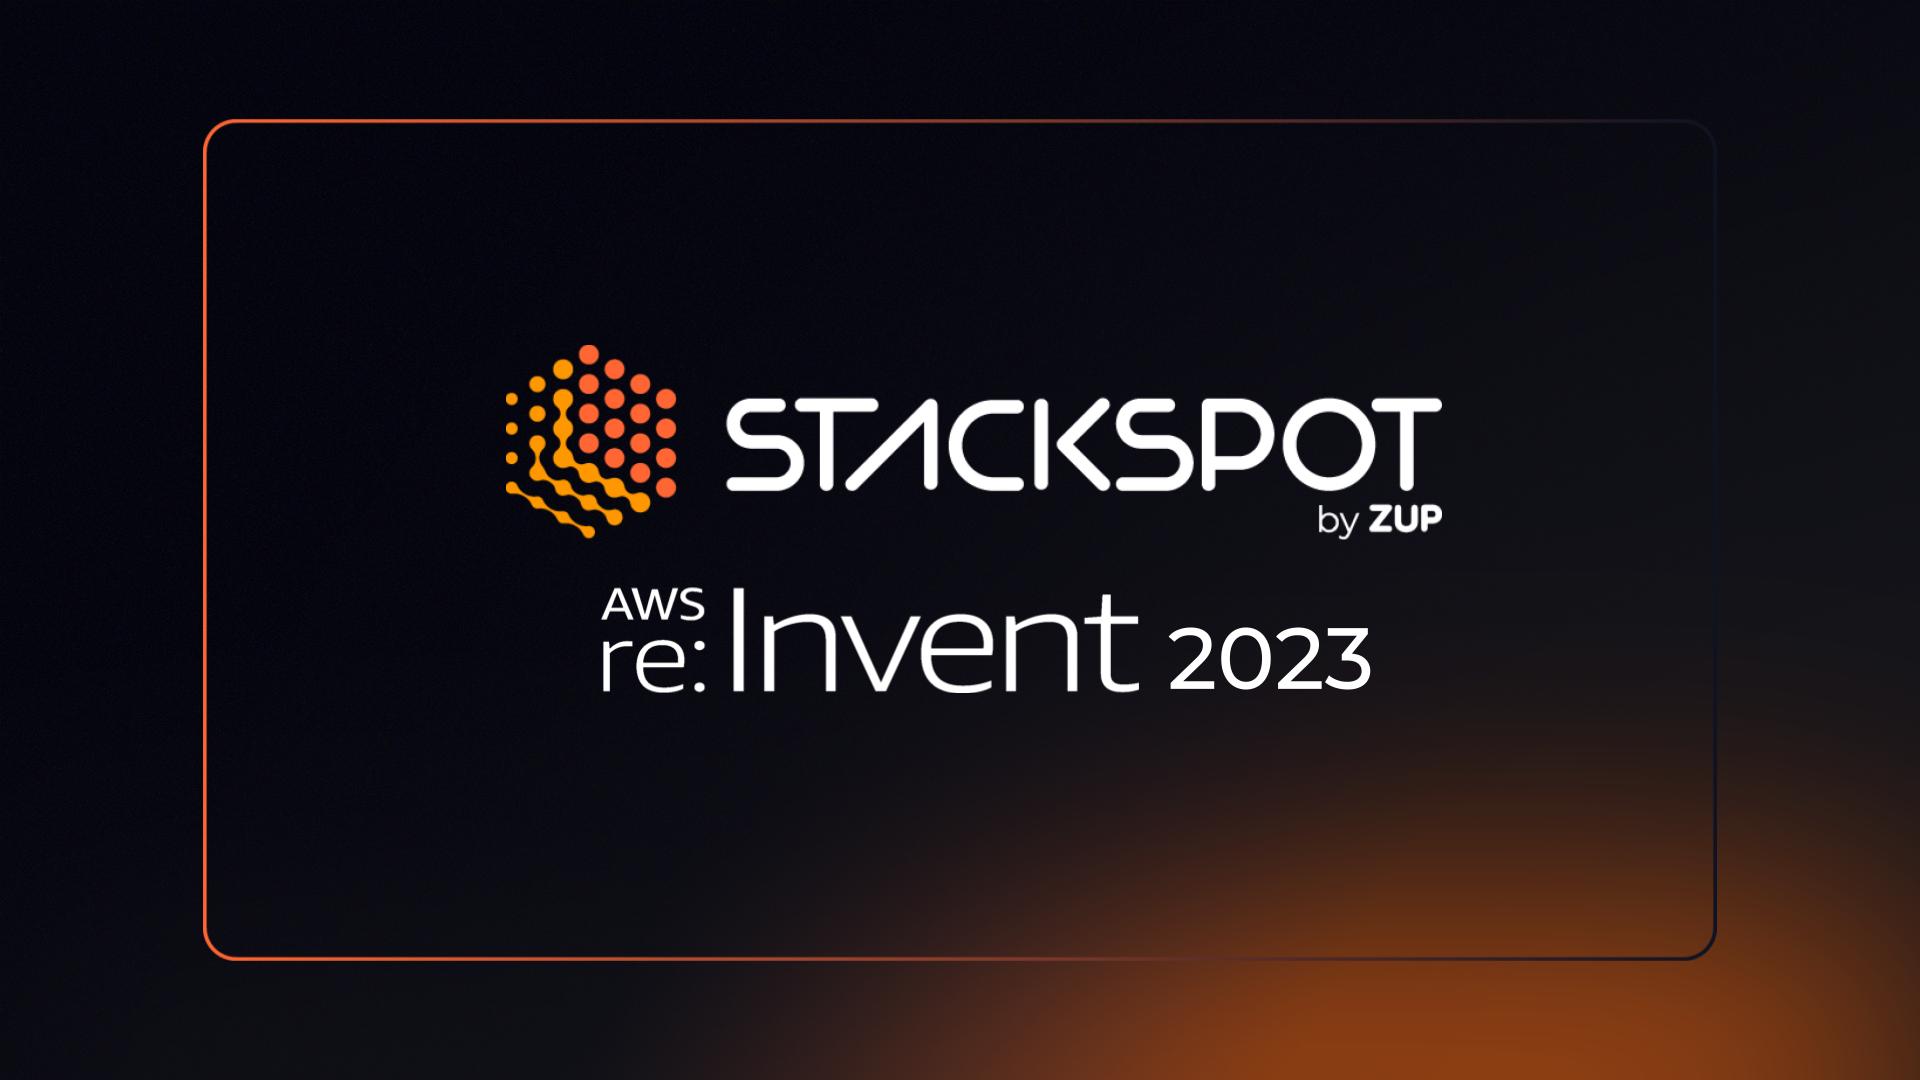 Capa do artigo "AWS re:Invent 2023: saiba como foi a participação da StackSpot". Nela, temos a logo da StackSpot, uma colmeia em tons de laranja, e abaixo AWS re:Invent 2023. O fundo é preto e laranja.